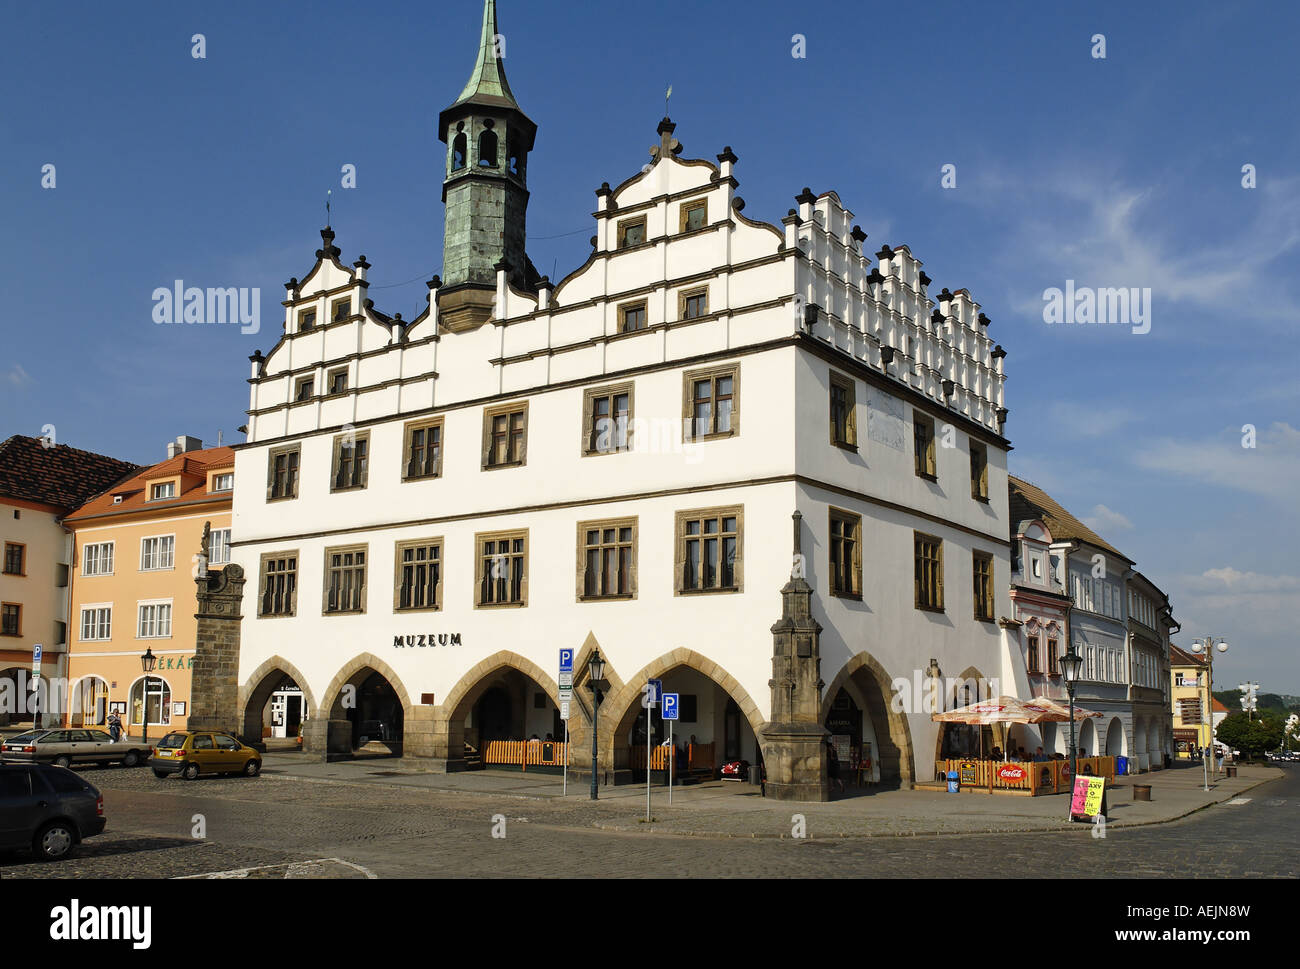 Historische alte Stadt Litomerice, Böhmen, Tschechien Stockfotografie